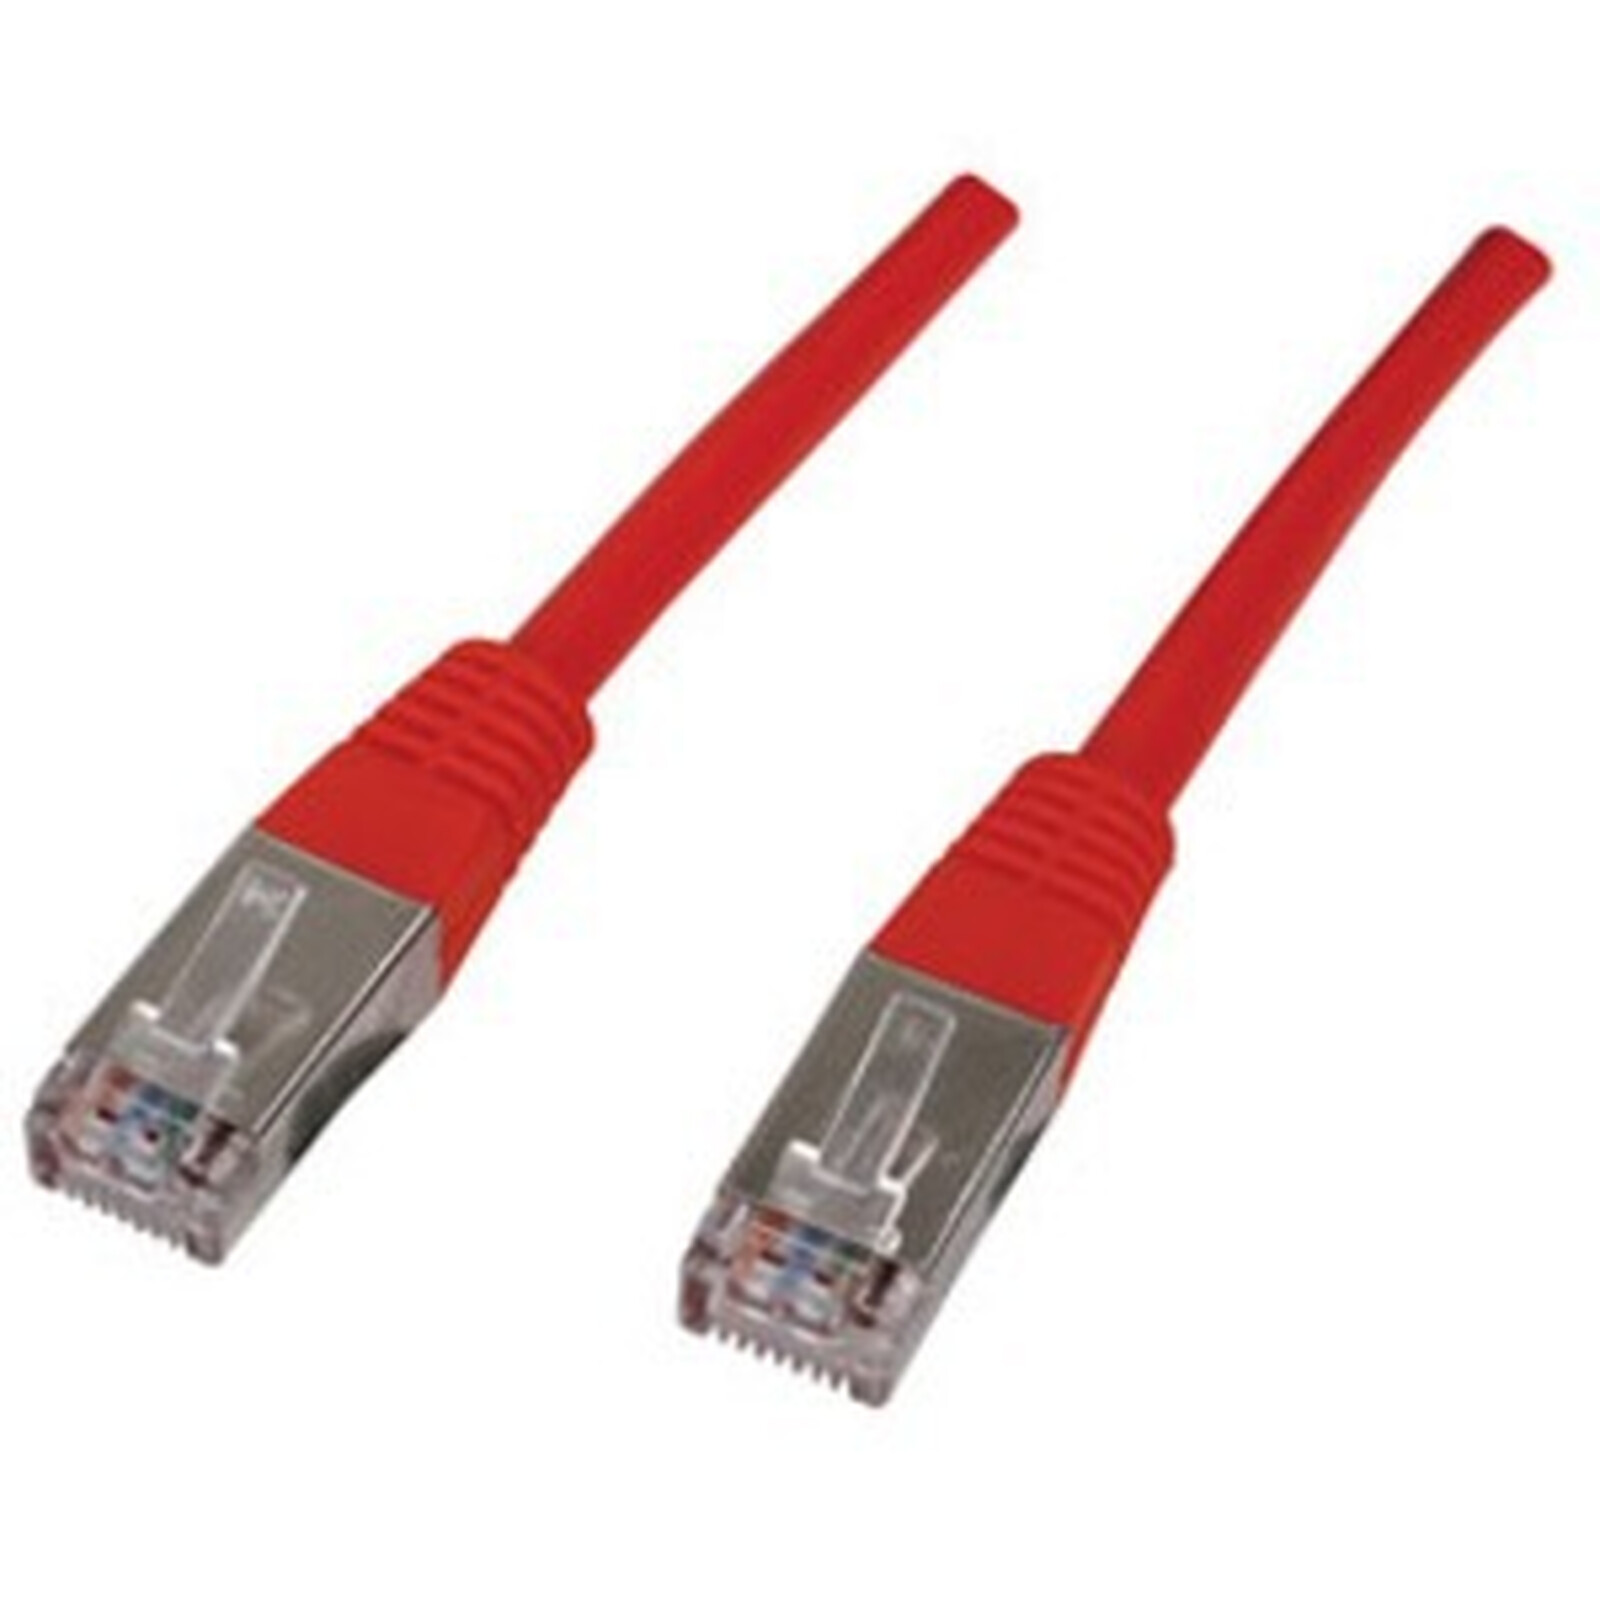 Кабель f/FTP cat5e. 10base-t кабель. Шнур соединительный f/UTP 6cat. 0,5m(pc01-c5eu-XXM). Cat.5e 200base-t разветвитель. U кабель купить